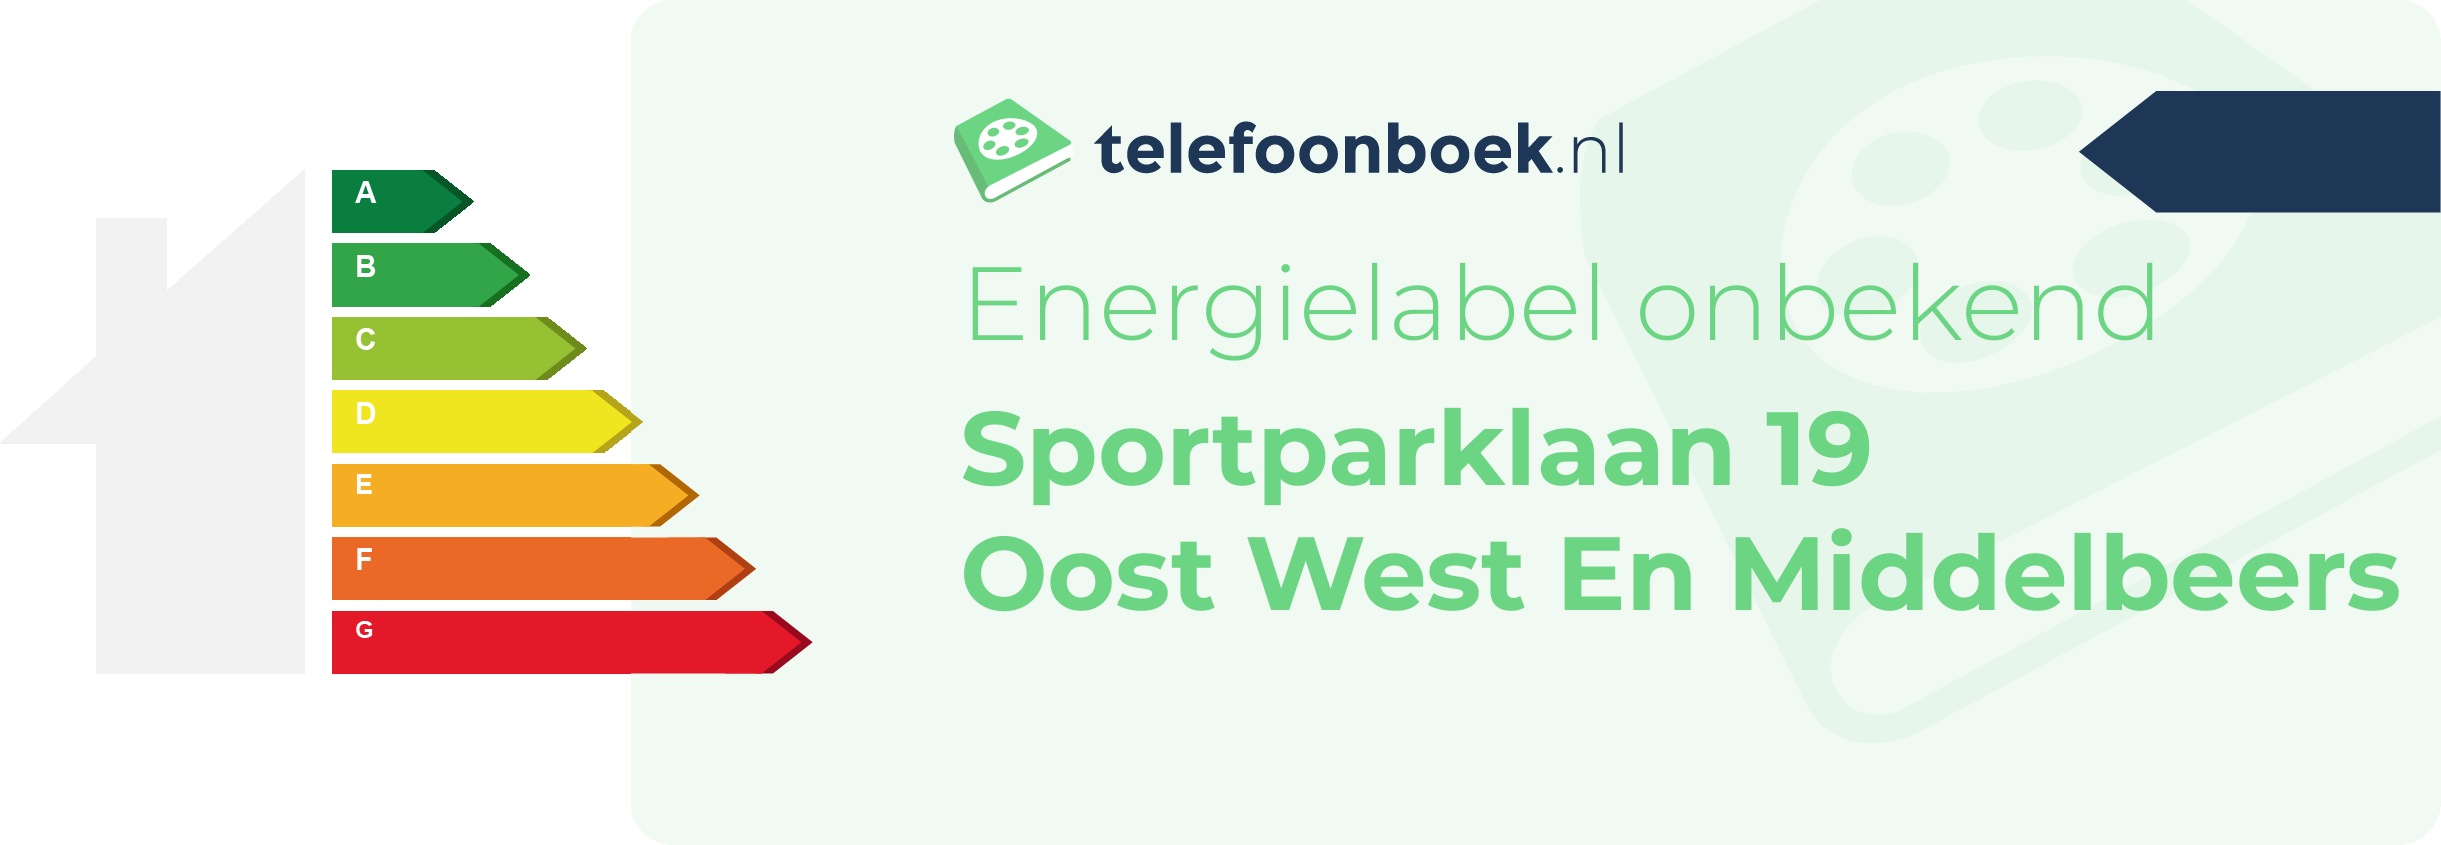 Energielabel Sportparklaan 19 Oost West En Middelbeers